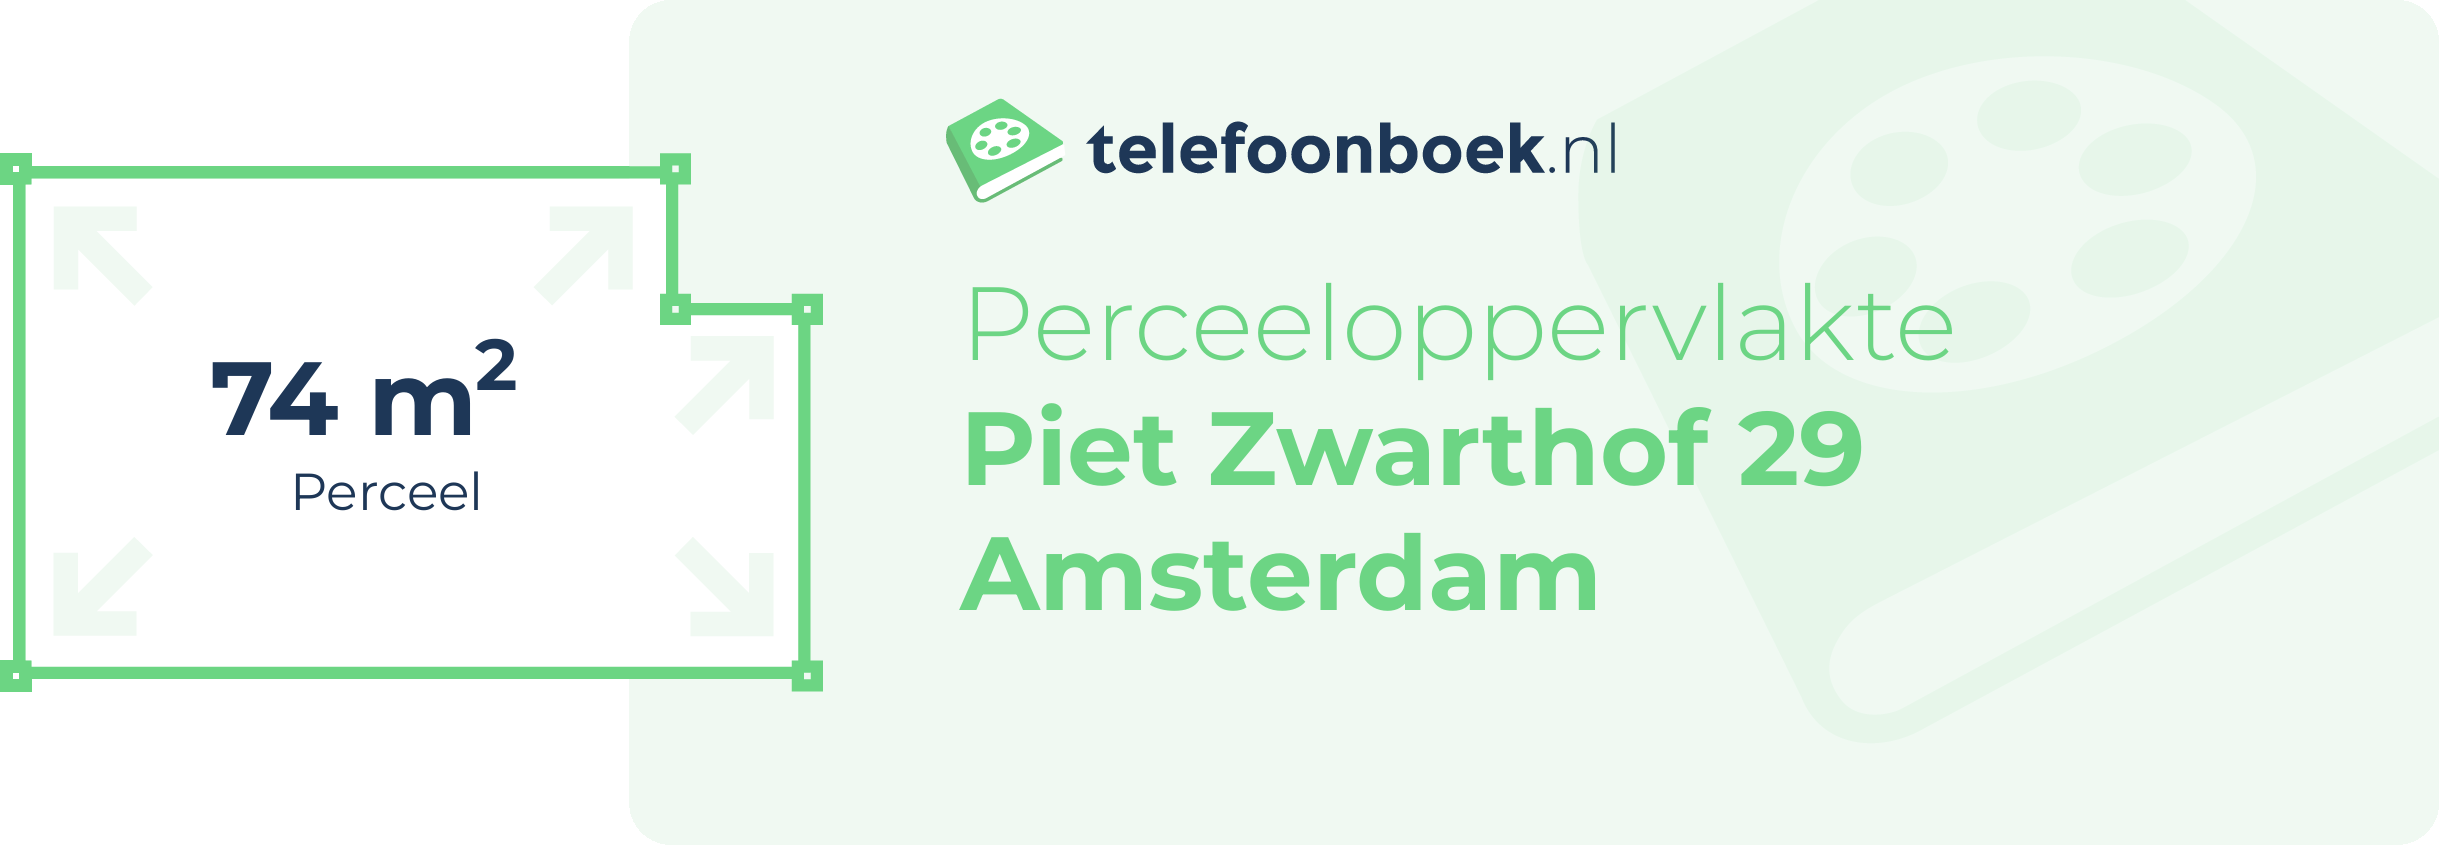 Perceeloppervlakte Piet Zwarthof 29 Amsterdam